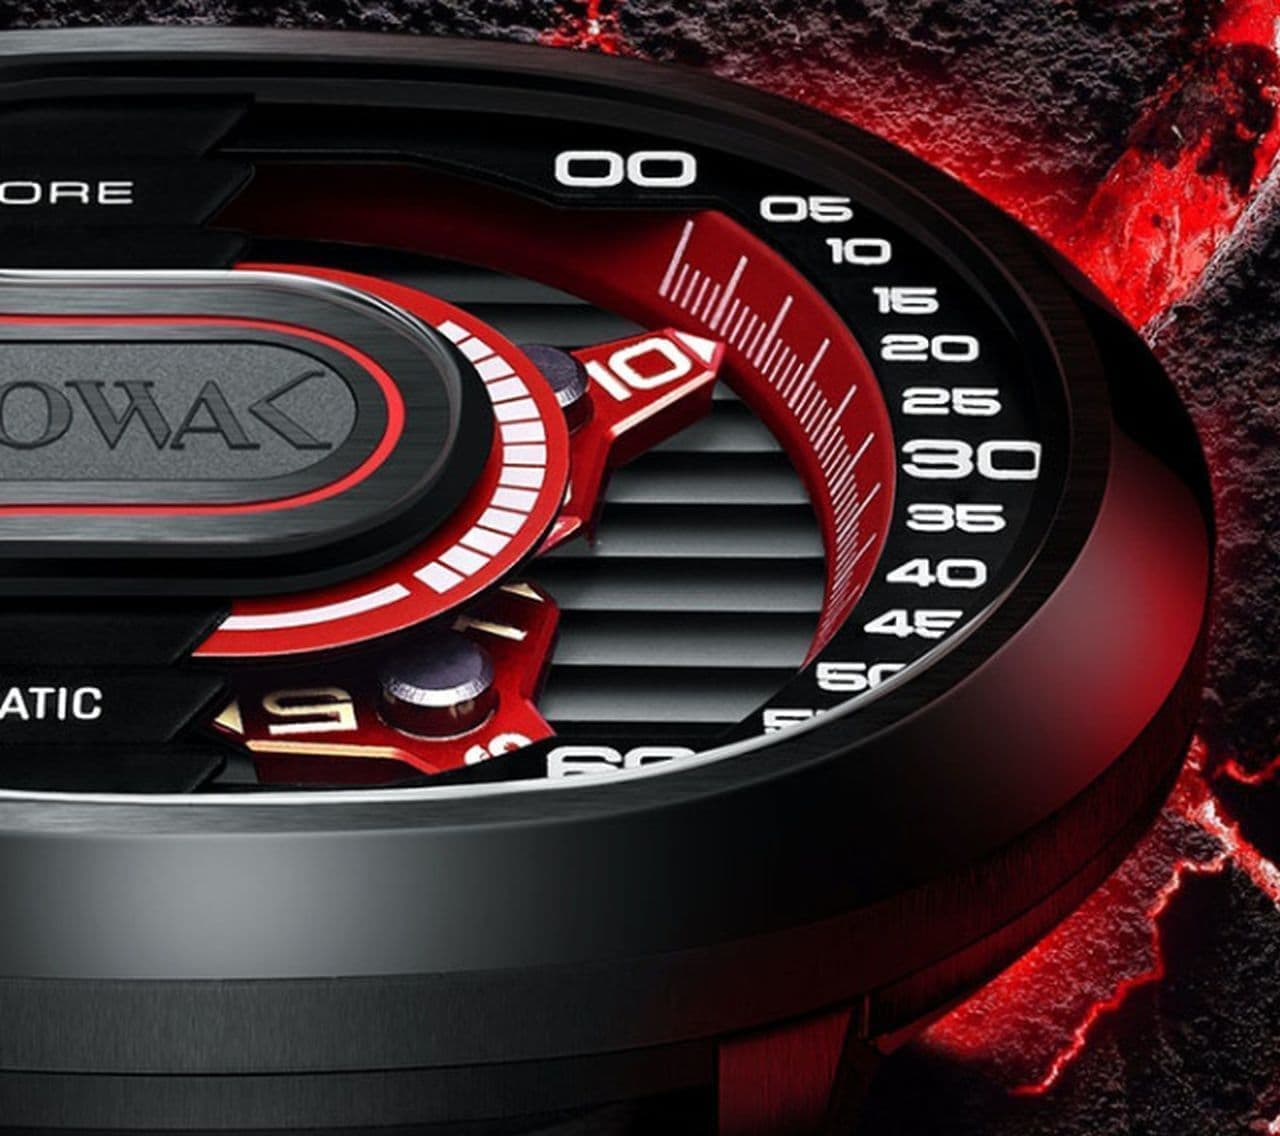 ヘアピンカーブデザインの腕時計「ATOWAK ETTORE」Makuakeに登場 ― 時刻表示にWandering Hour方式を採用